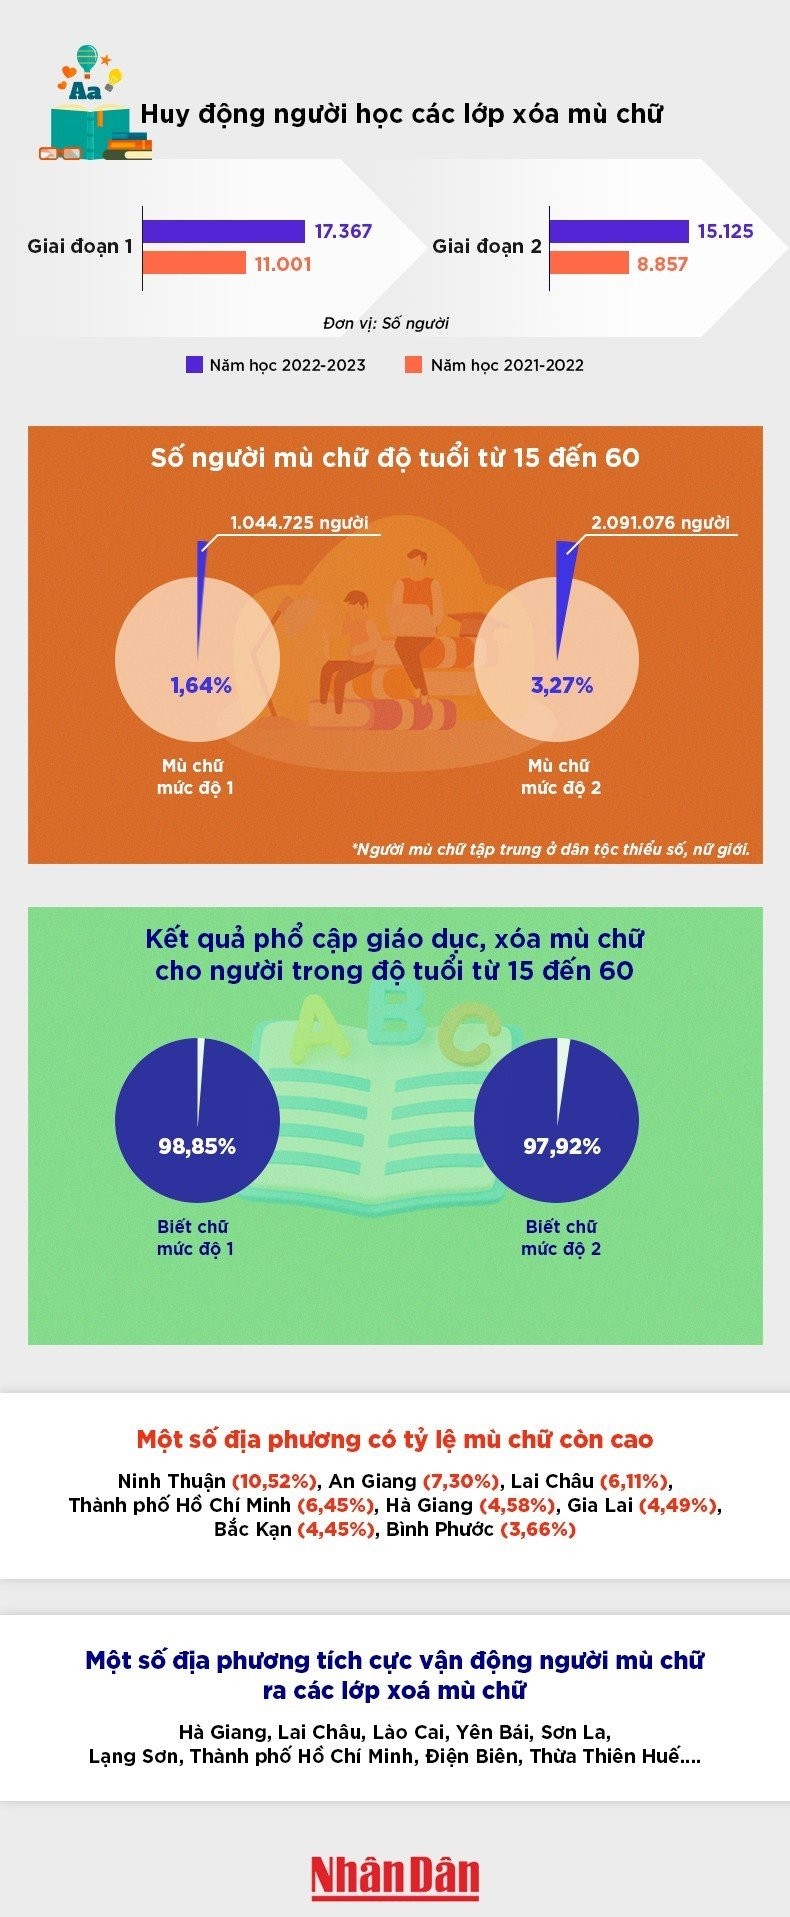 [Infographic] Huy động được hơn 32 nghìn người đi học xóa mù chữ ảnh 1